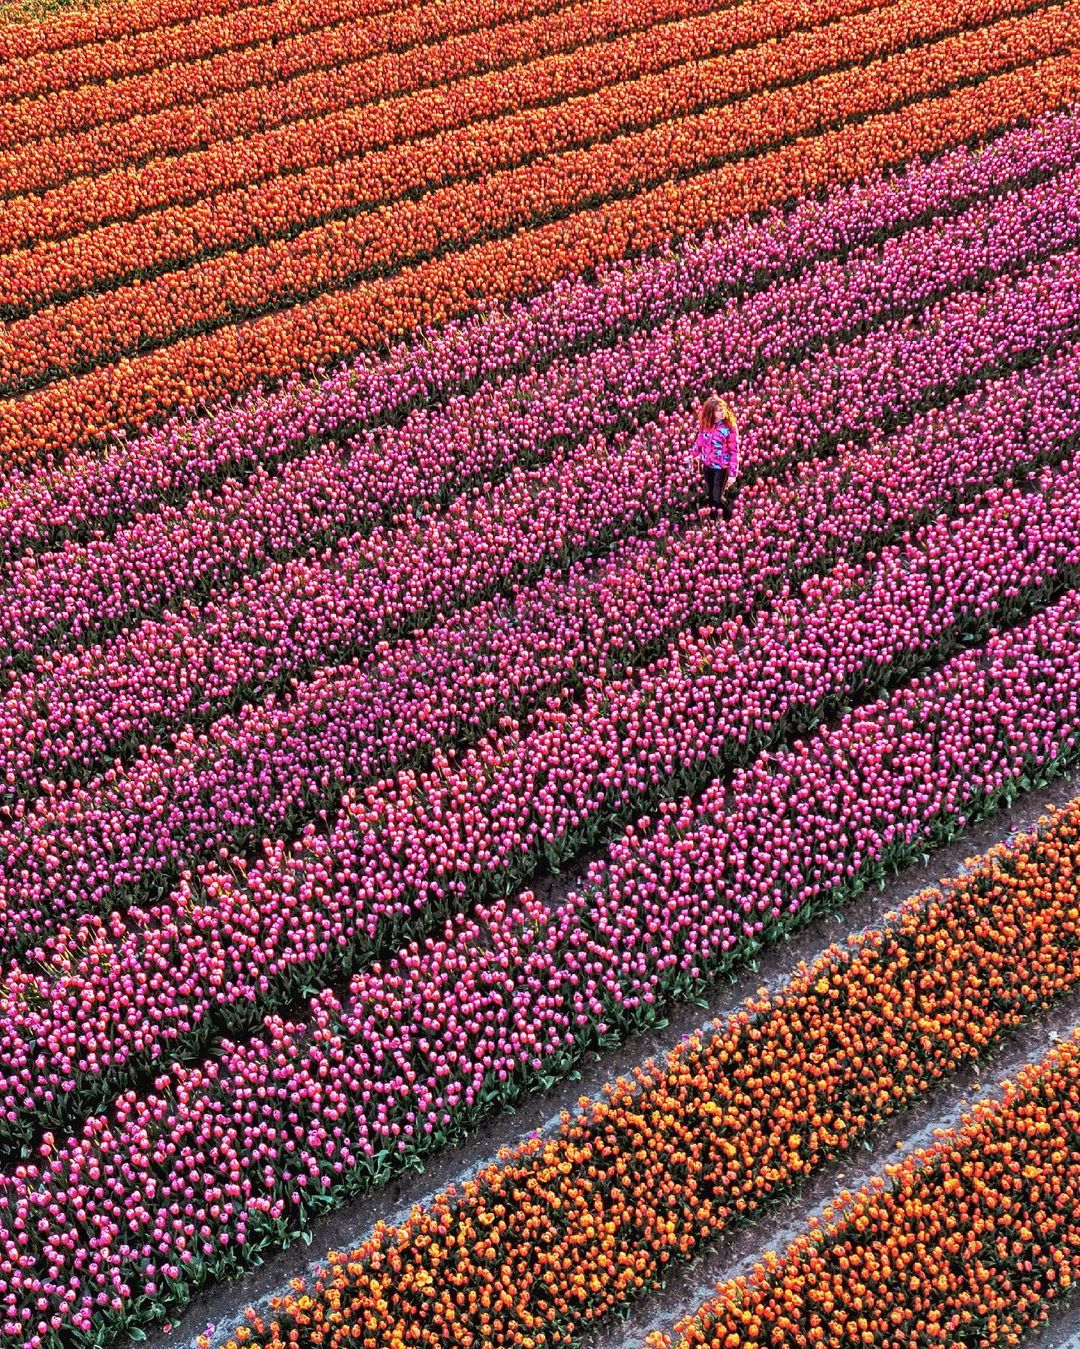 Thật chẳng nói quá khi người ta cho rằng tới 80% lượng hoa tulip đều bắt nguồn từ đất nước này. Ảnh: @lisetverberne